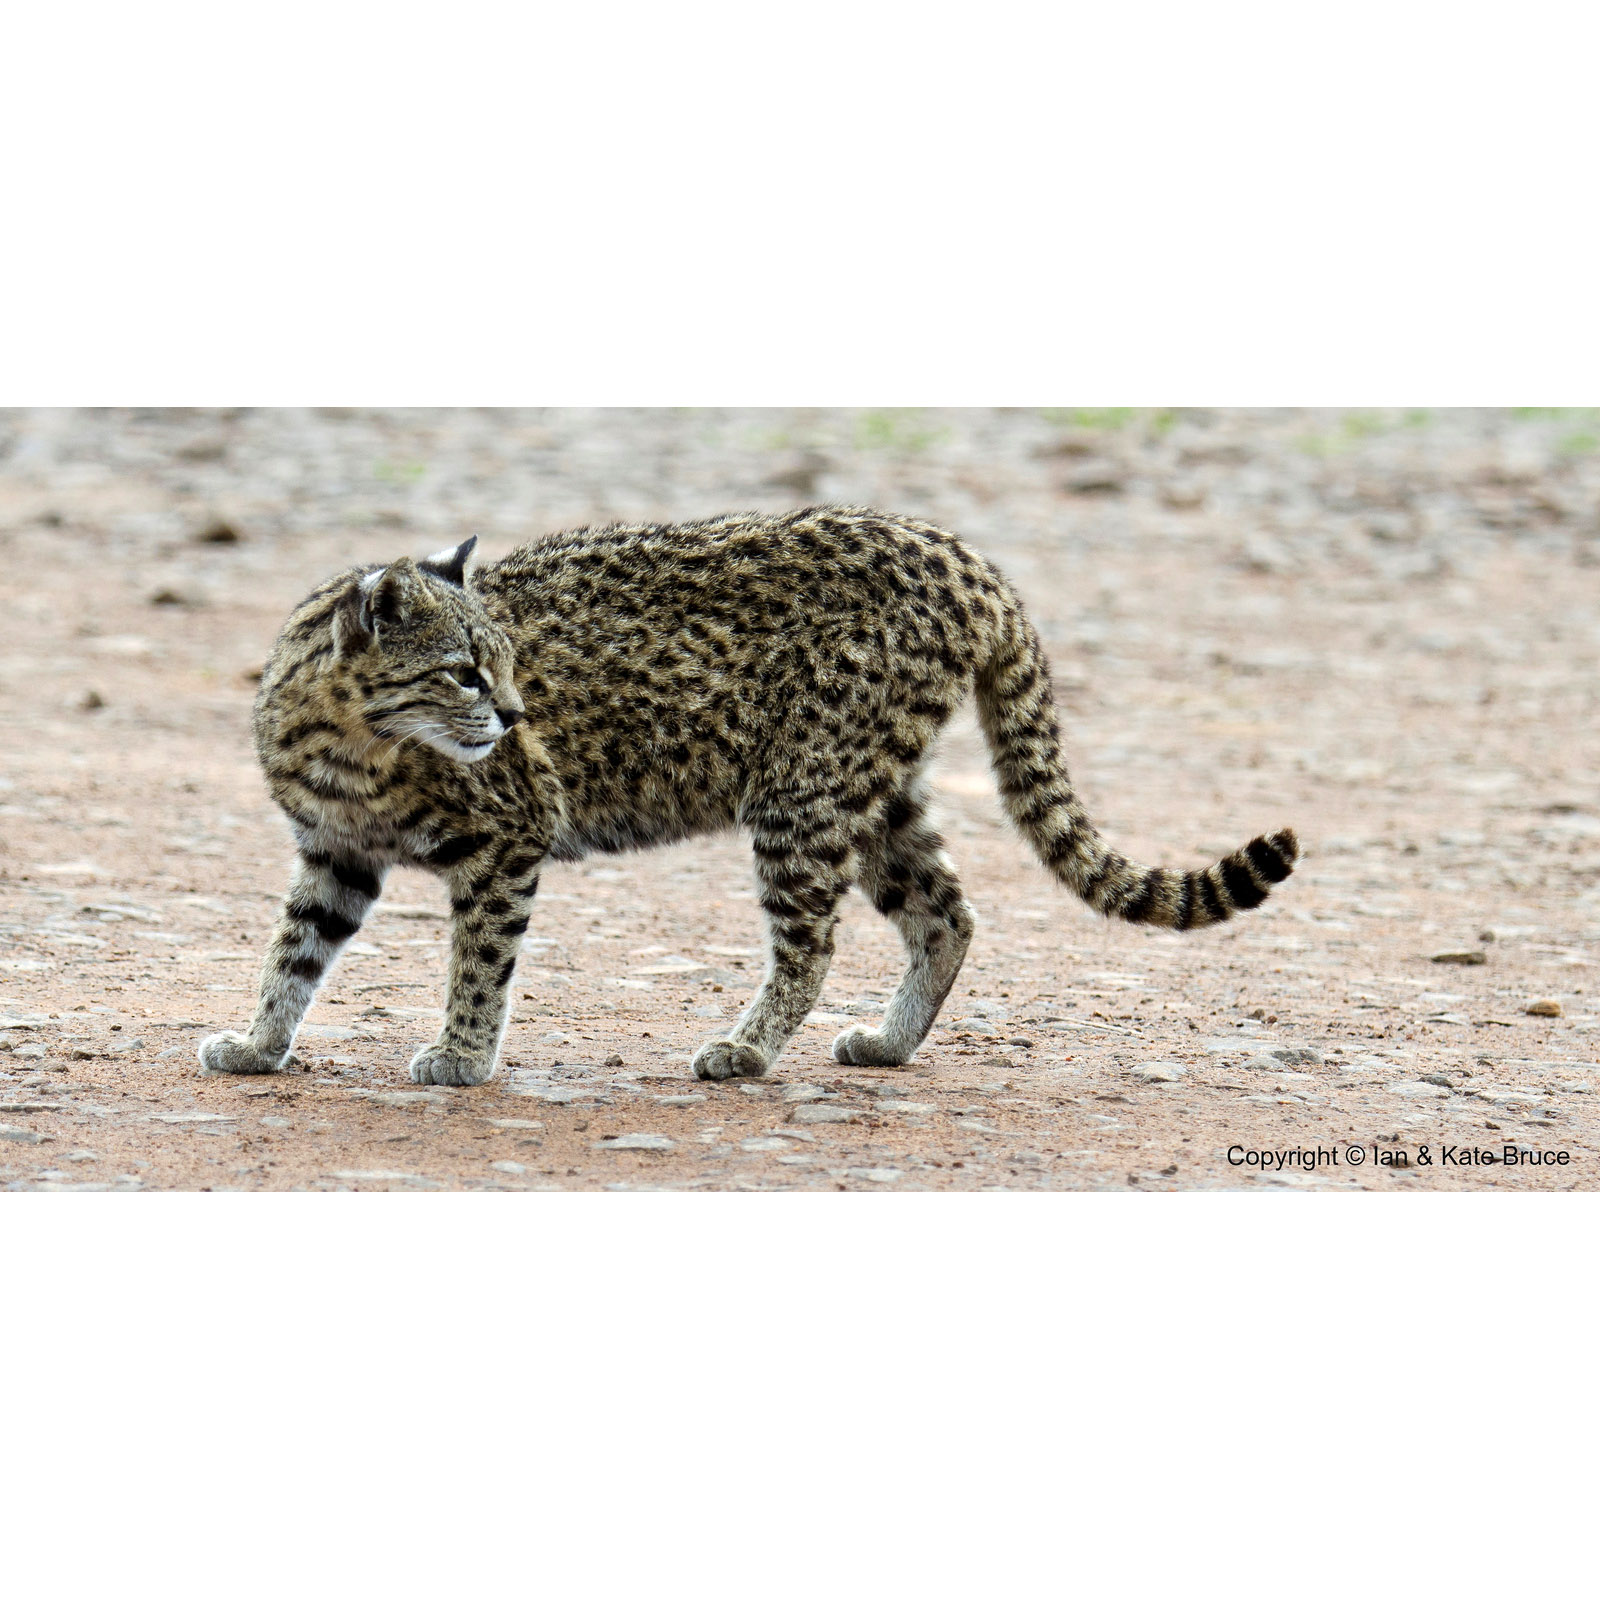 Leopardus geoffroyi на марках